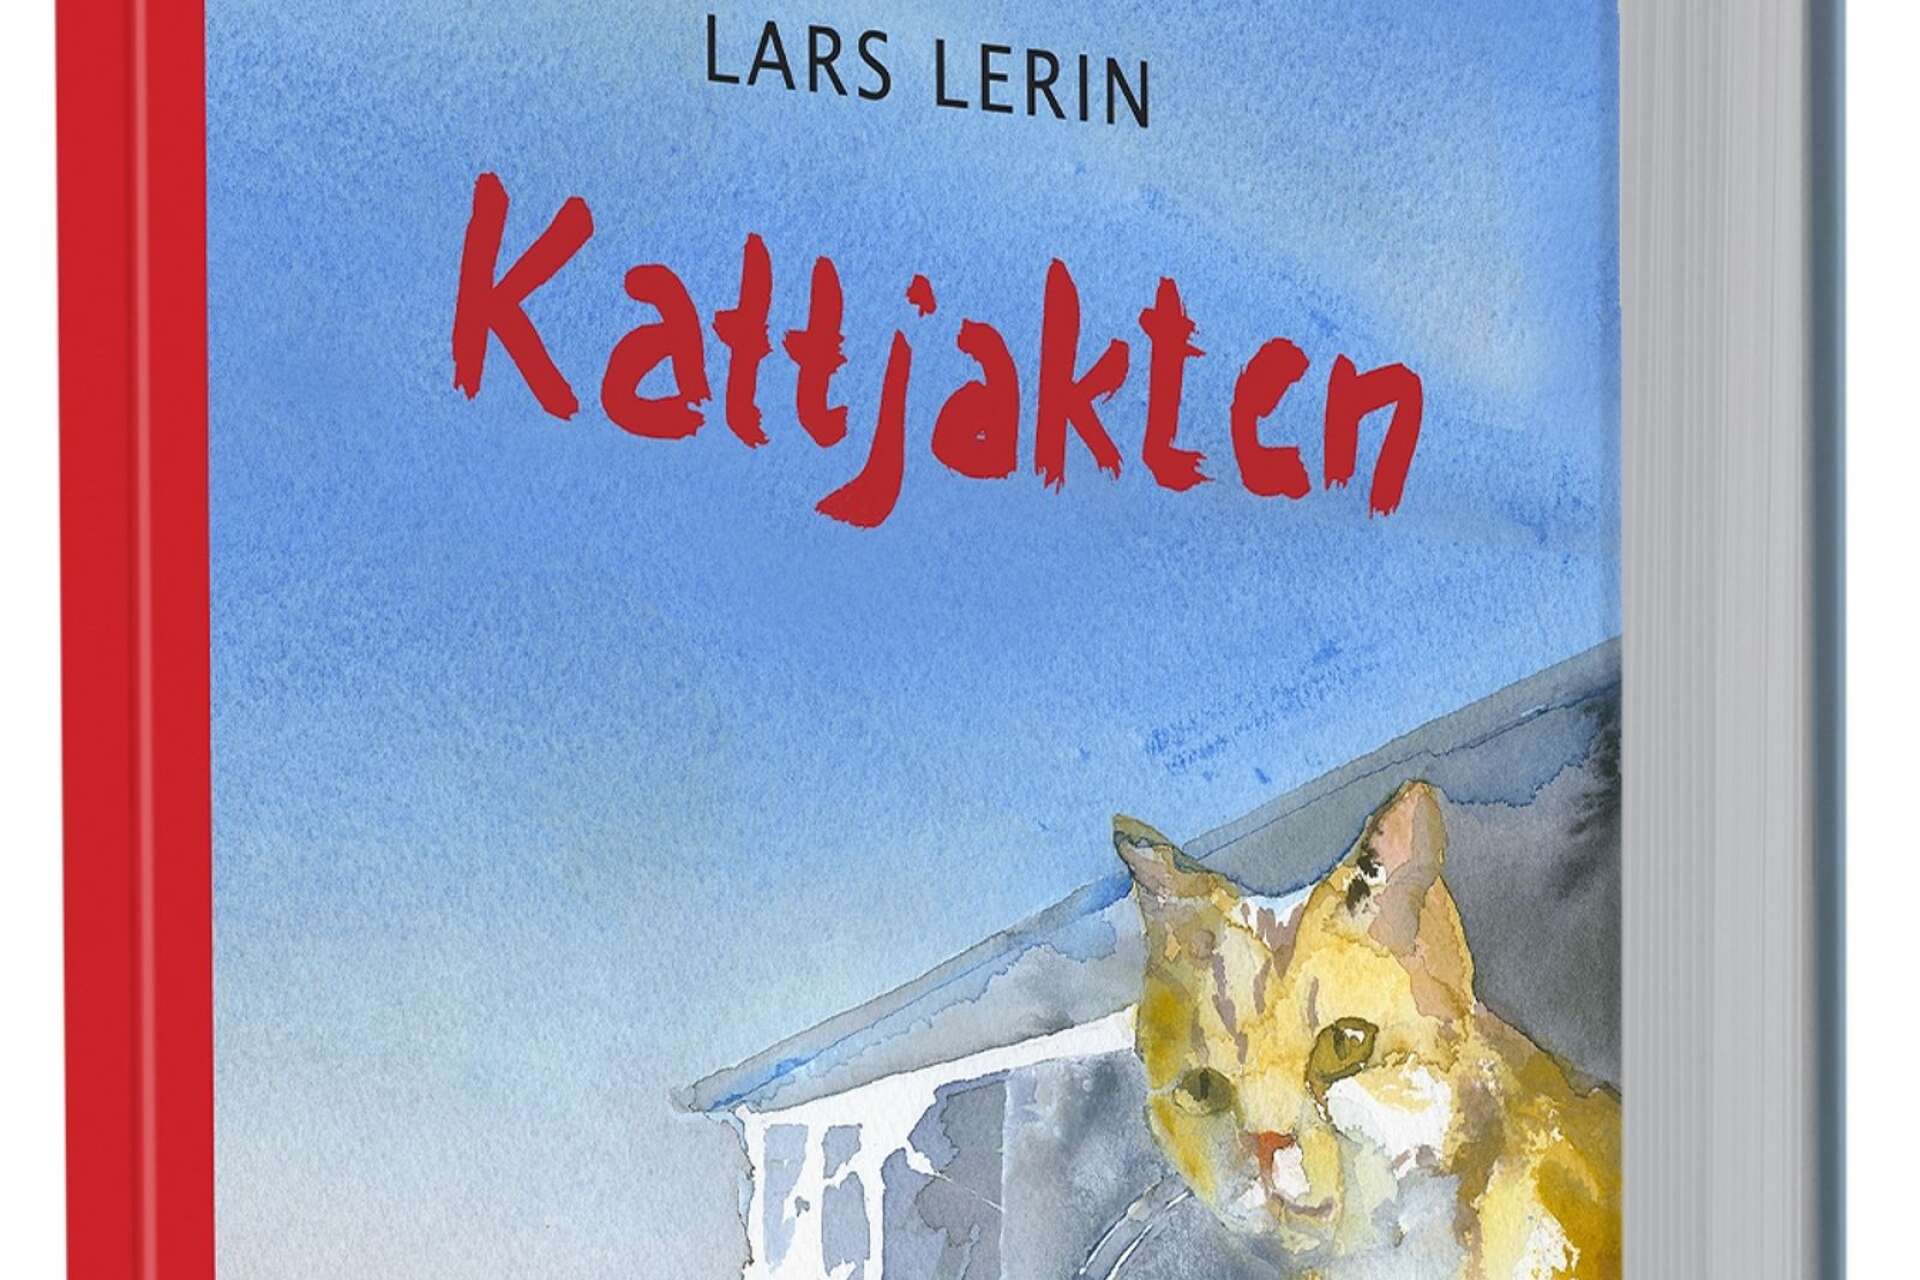 Kattjakten är Lars Lerins senaste bok, som gav nya konstnärliga utmaningar. ”Jag blev tvungen att måla sotare och katter i stege och sånt, det skulle jag inte gjort annars. Det är roligt som omväxling.”